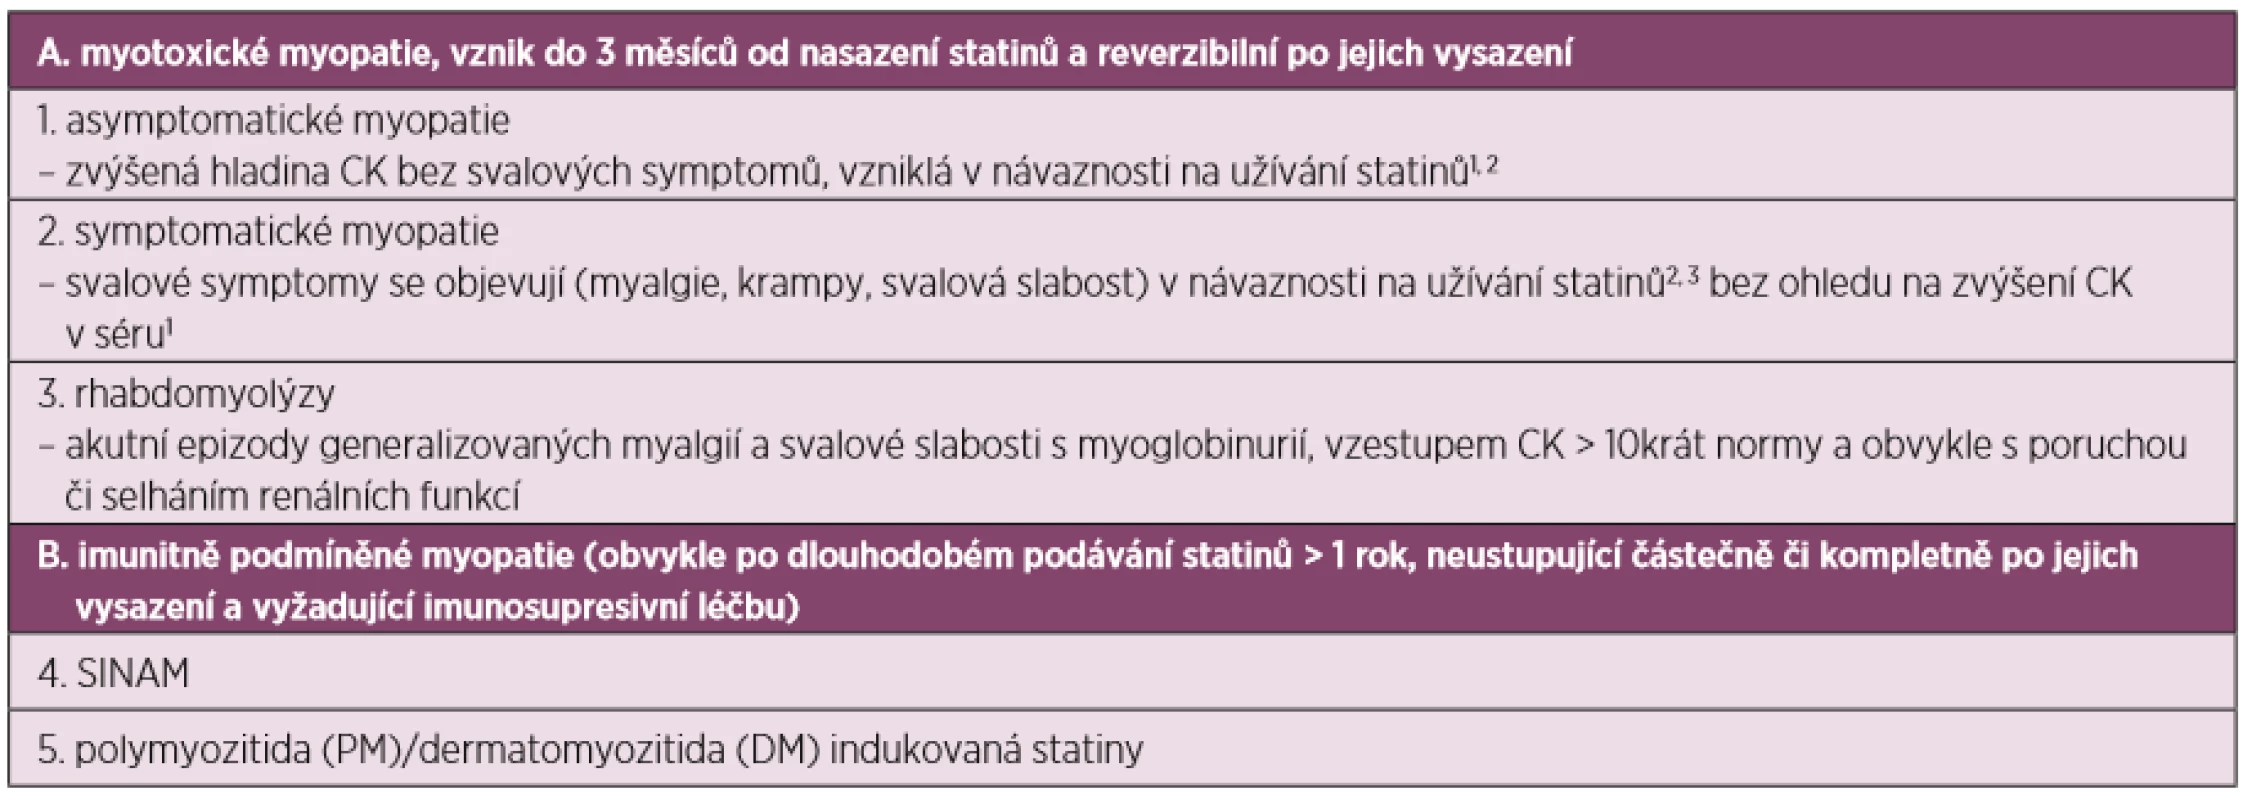 Klasifikace statinových myopatií (převzato a upraveno dle Bednaříka et al.) (5) 